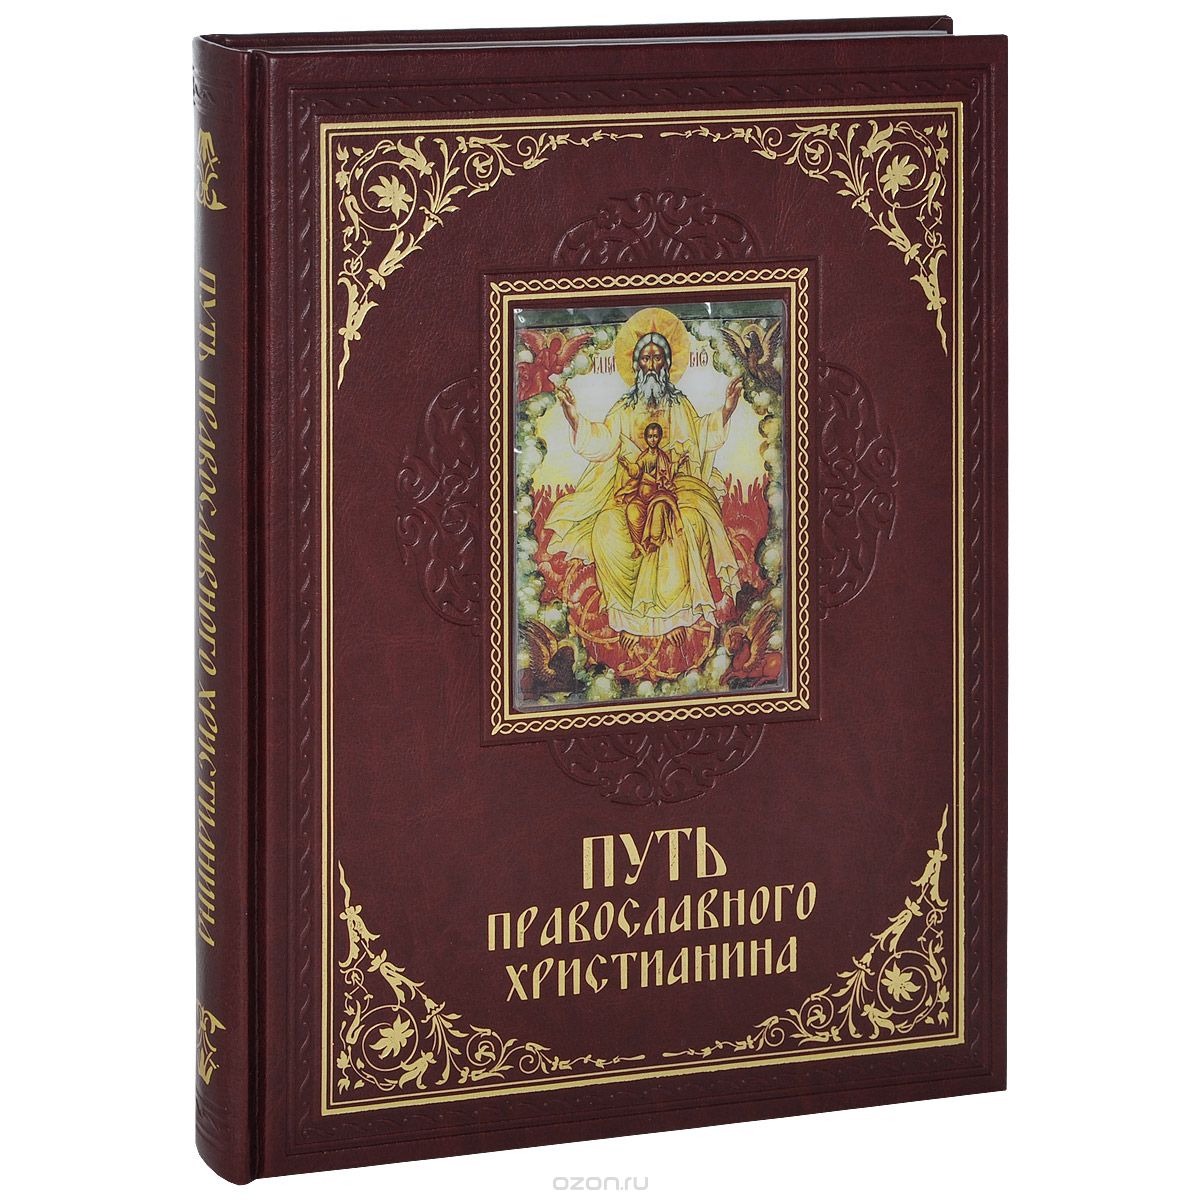 Путь православного христианина (подарочное издание), Елена Прокофьева